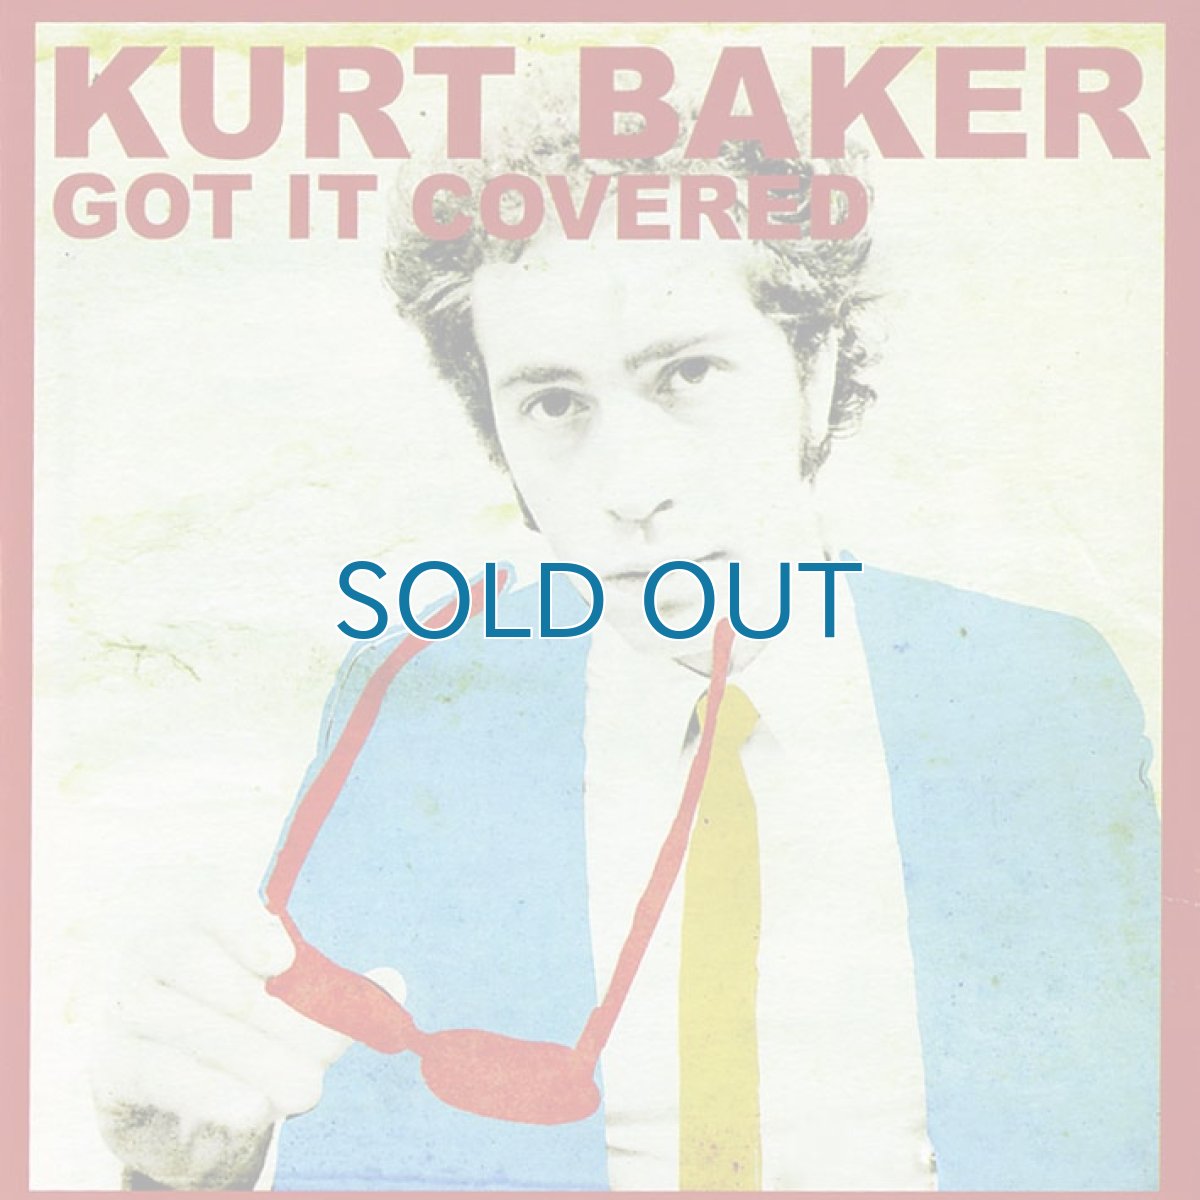 画像1: Kurt Baker / Got It Covered (1)